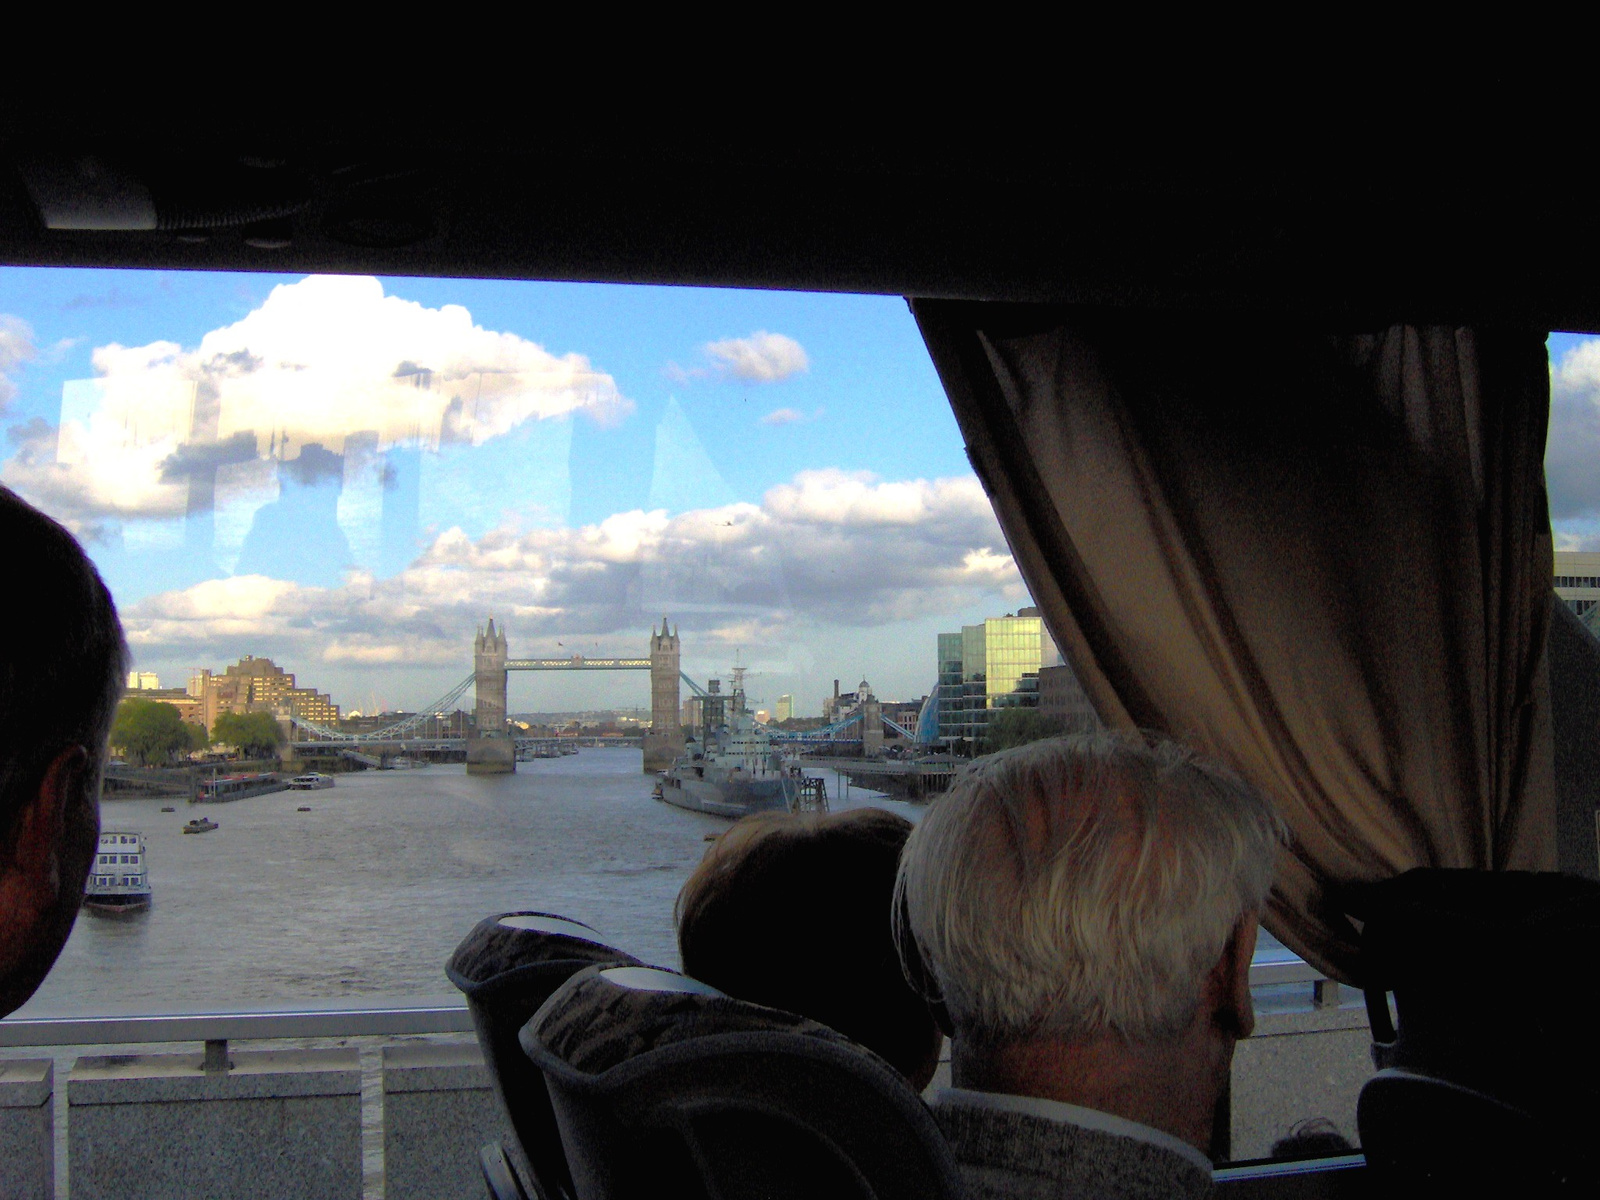 2009 London buszról fényképezve